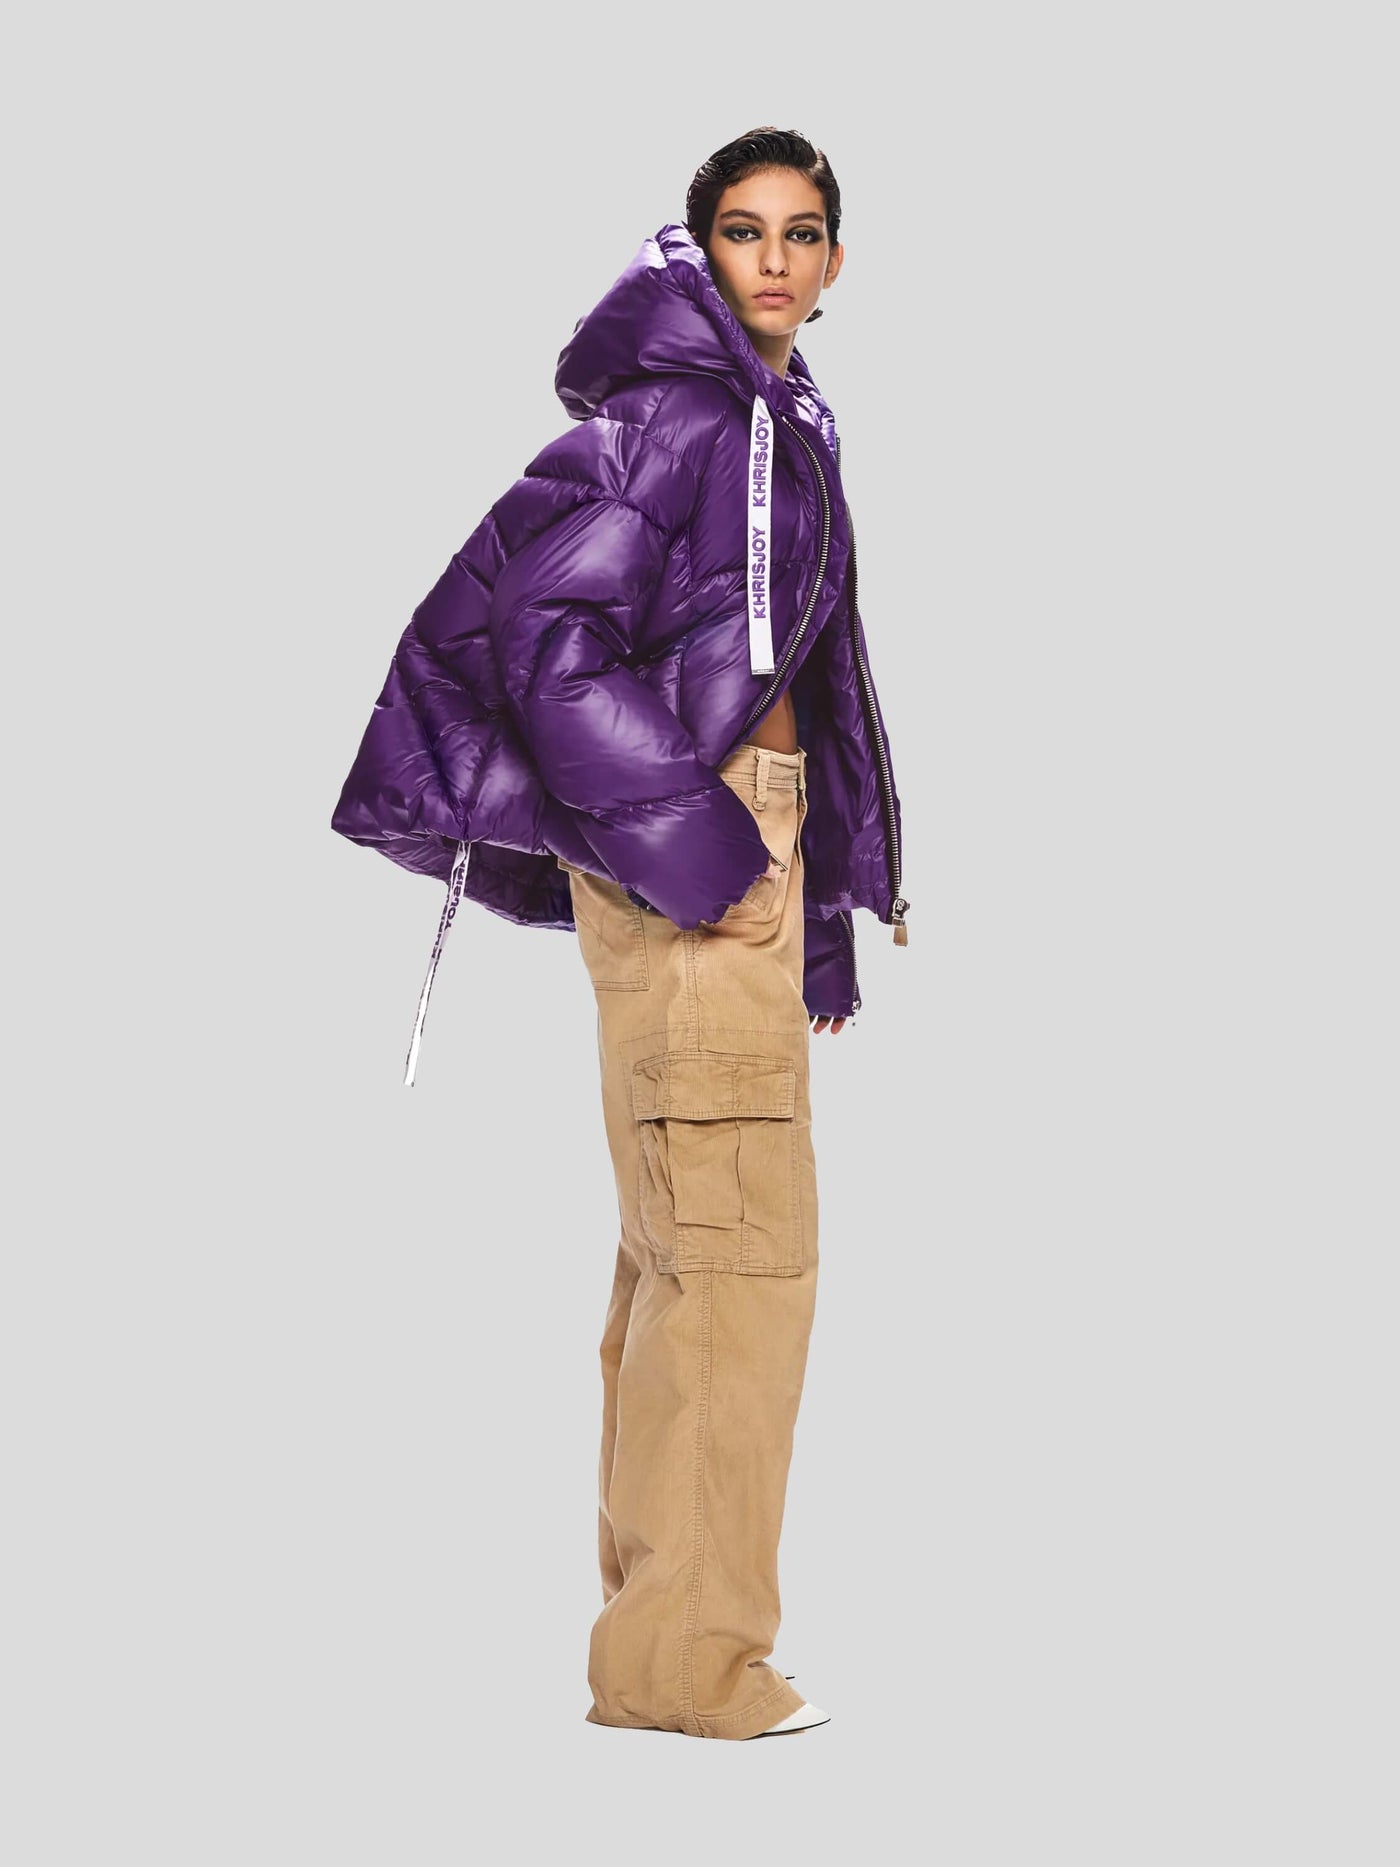 Khrisjoy Jacken | Daunenjacke Khris Iconic Puff Jacket shiny pansy-purple | AFPW001 NYL PA440 pansy / ADAM/EVE